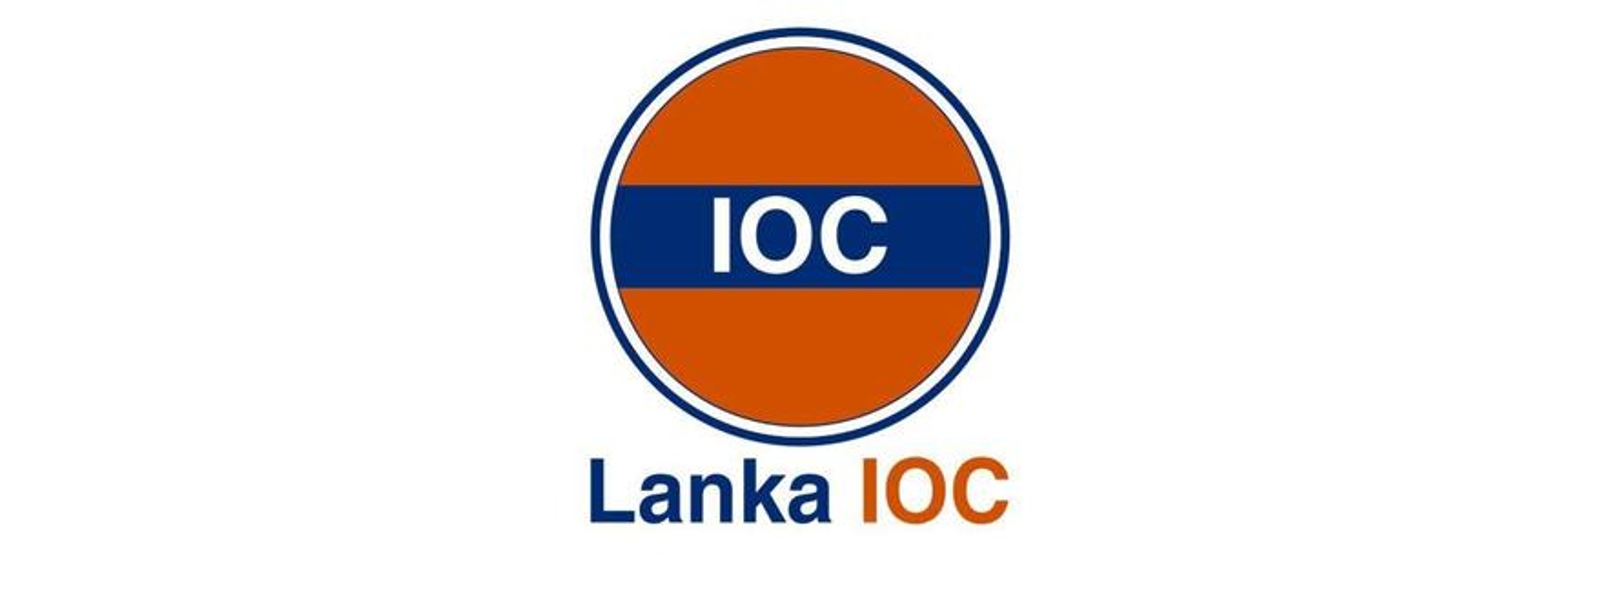 Lanka IOC restricts fuel sales